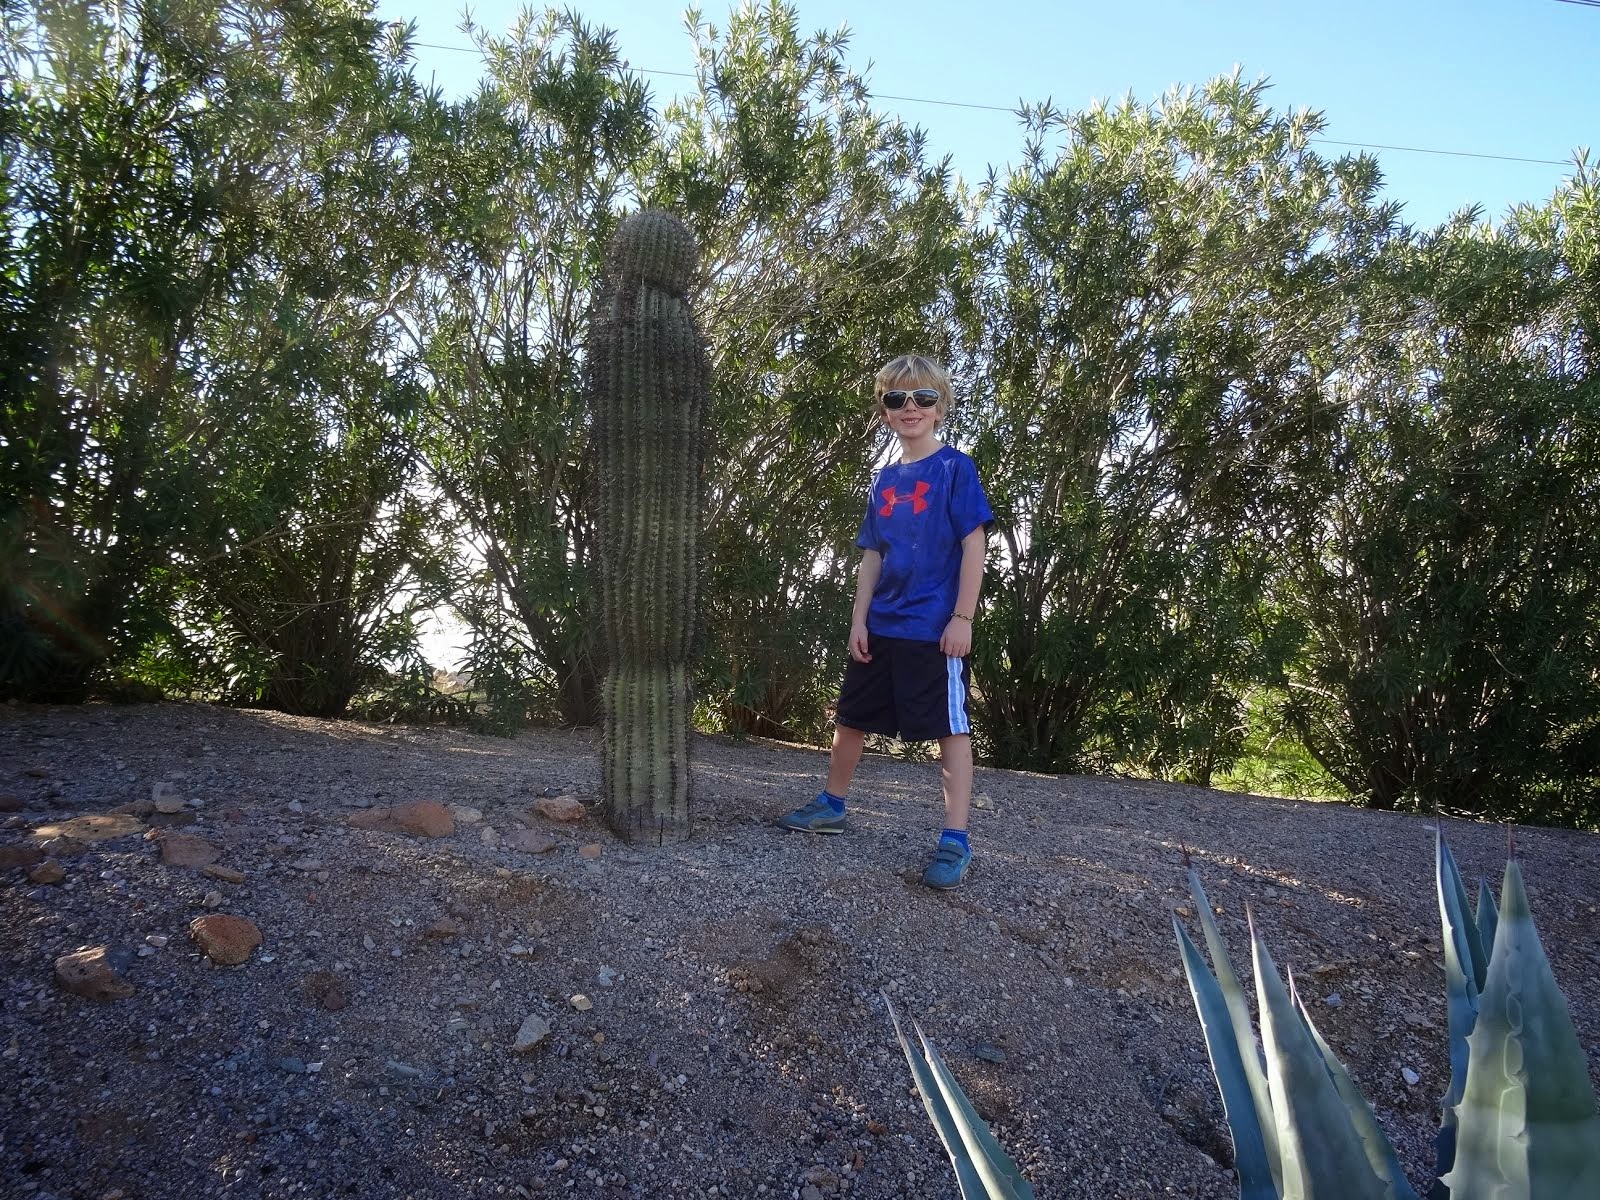 Boy Meets Cactus.